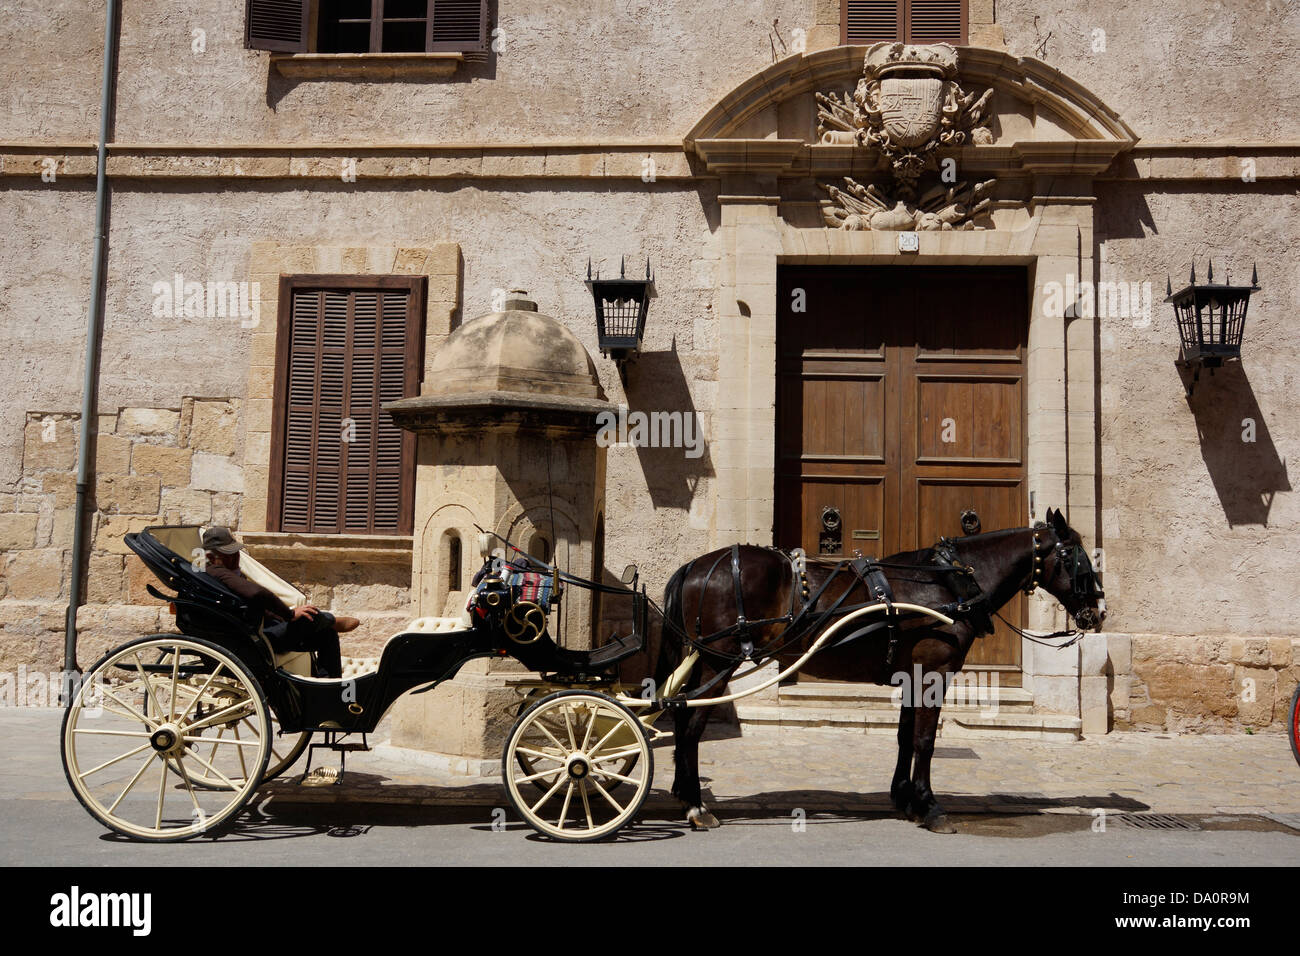 horse carriage in front of the almudaina royal palace, palma de mallorca, mallorca, spain Stock Photo